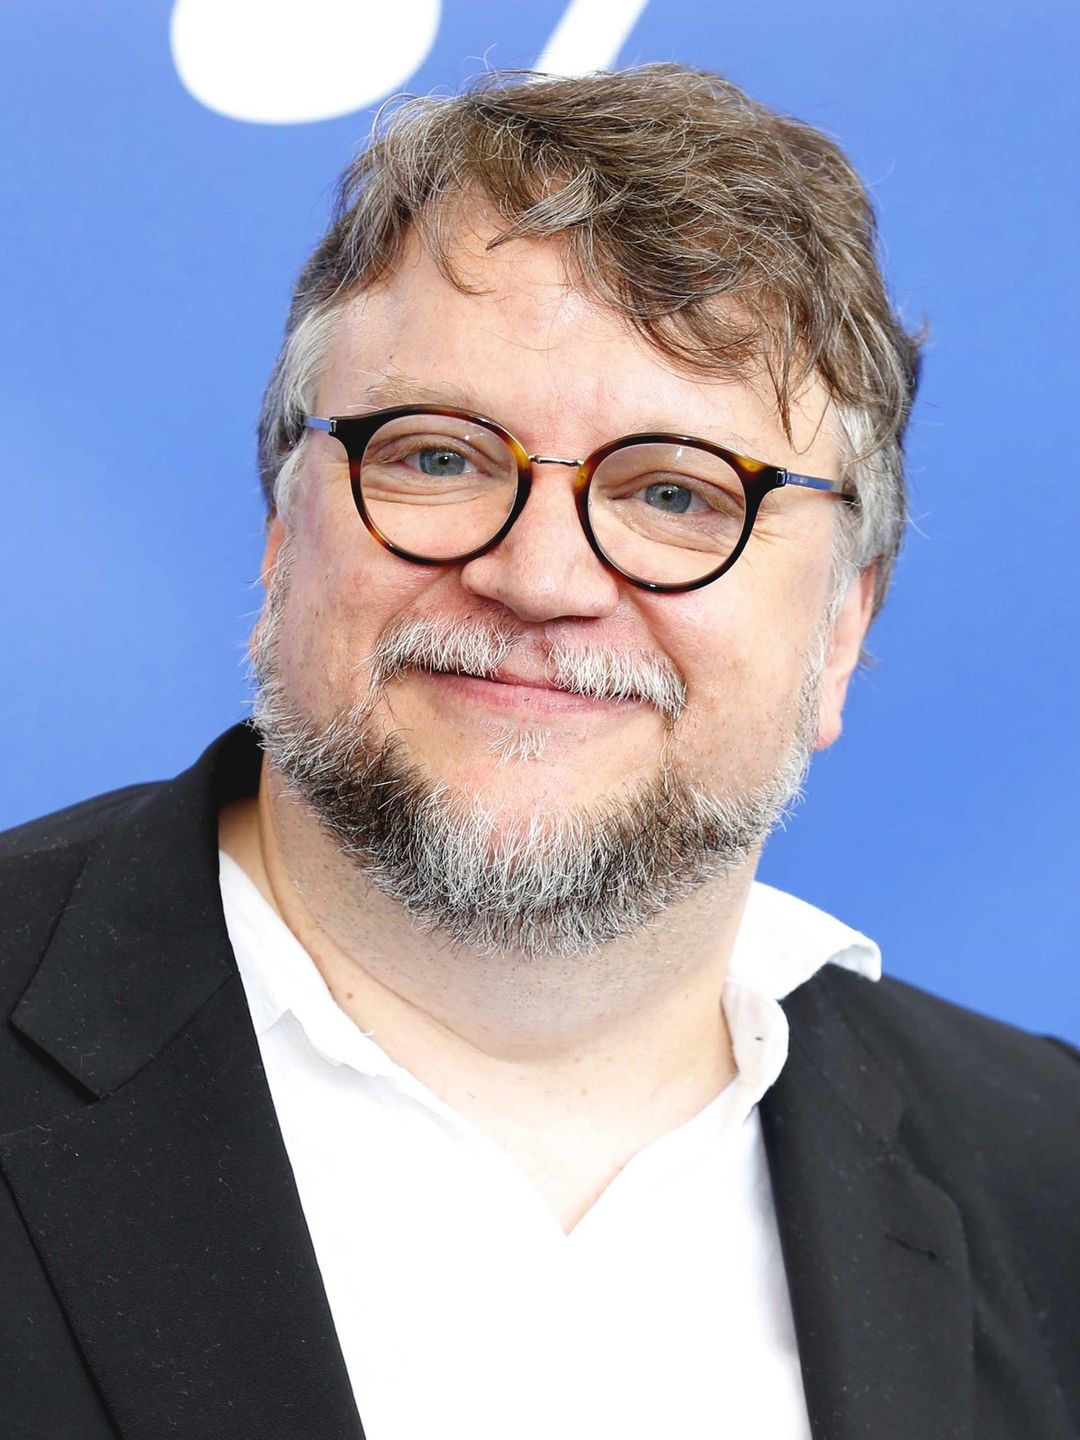 Guillermo del Toro biography